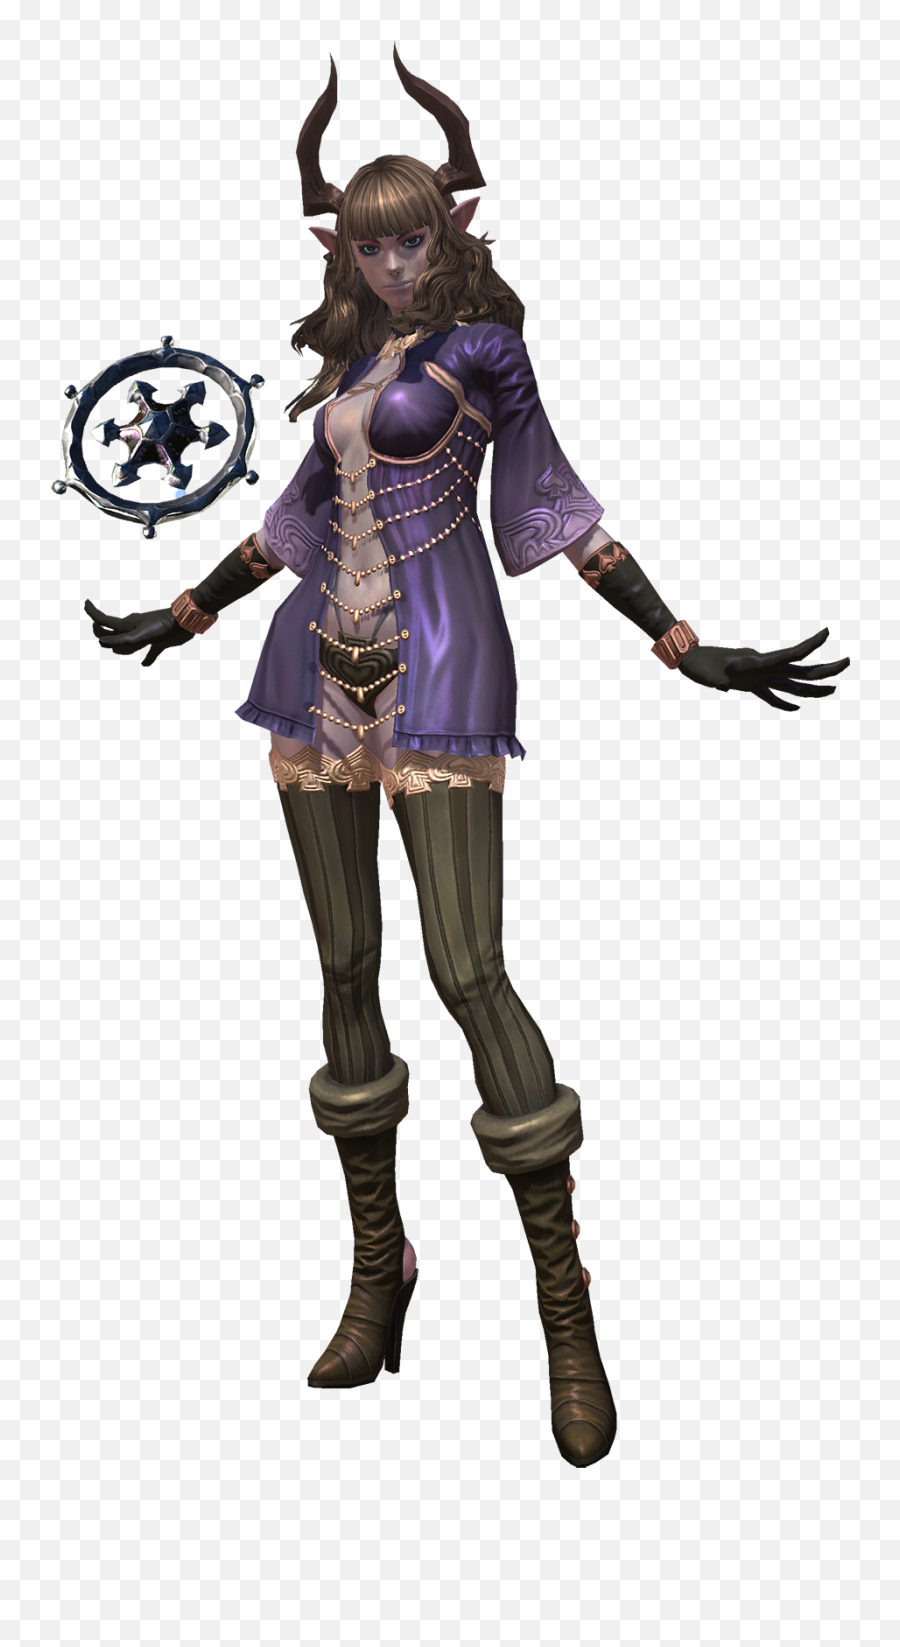 Sorcerer - Woman Warrior Png,Sorcerer Png